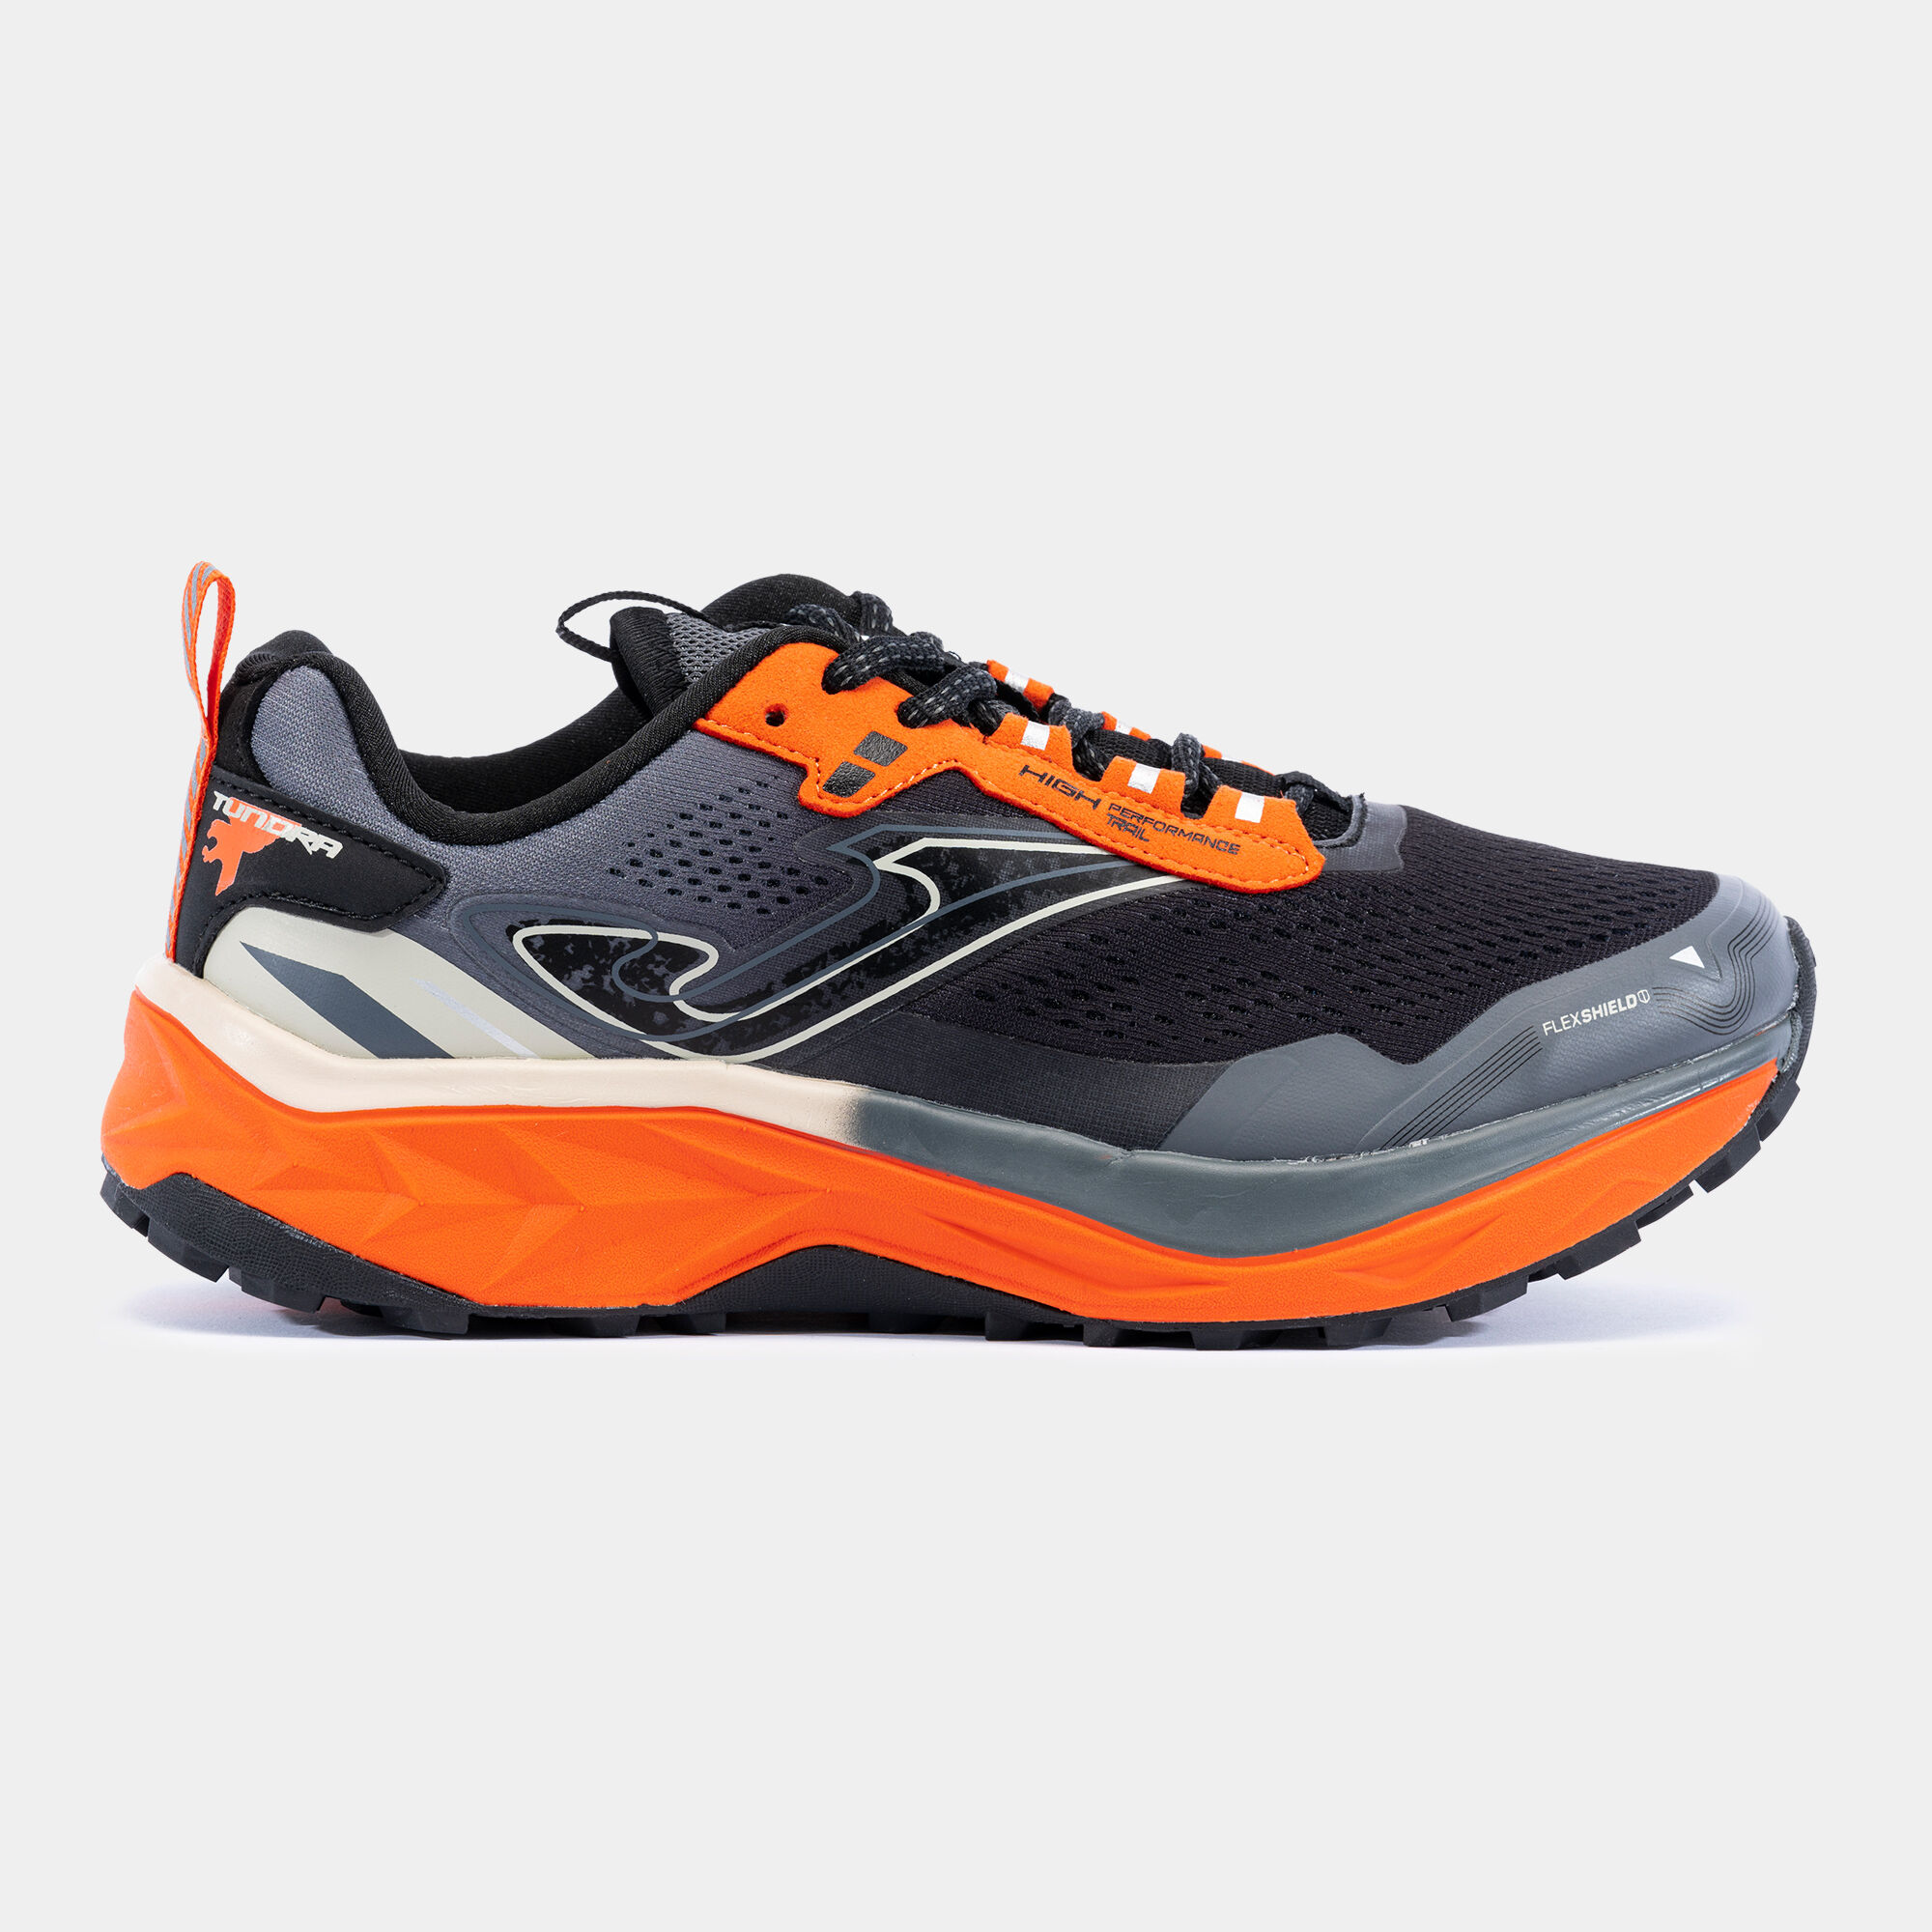 Chaussures trail running Tundra Men 23 homme gris orange